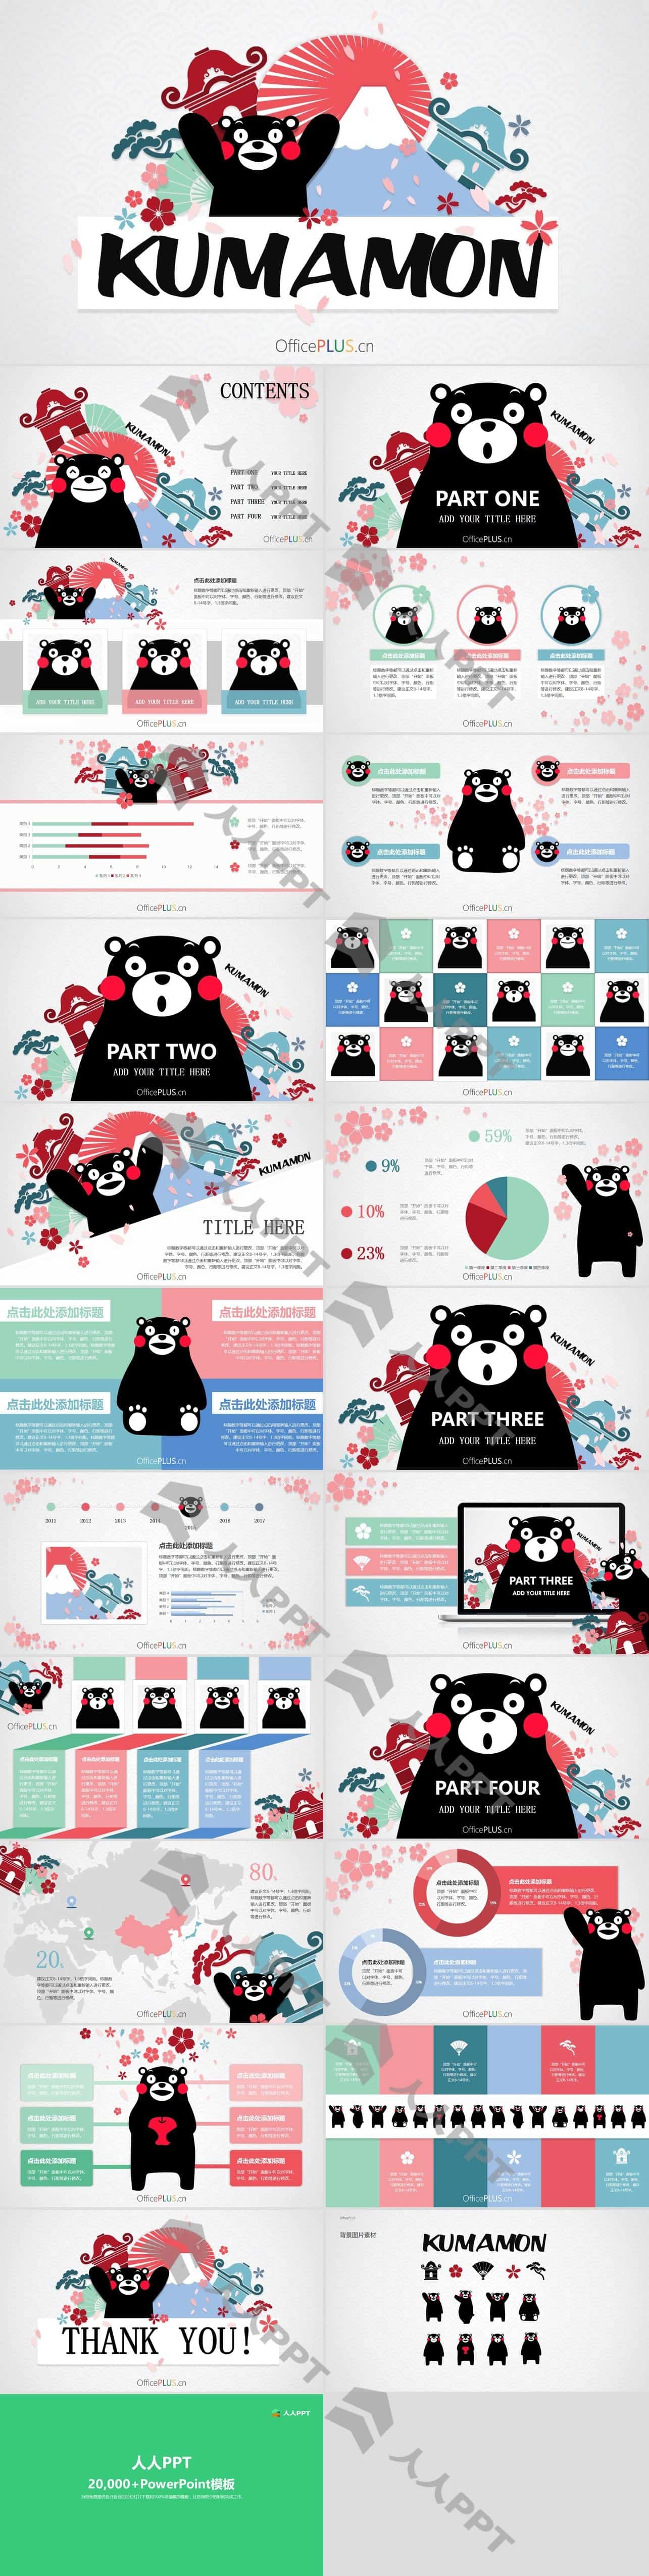 超萌可爱熊本熊主题PPT模板长图